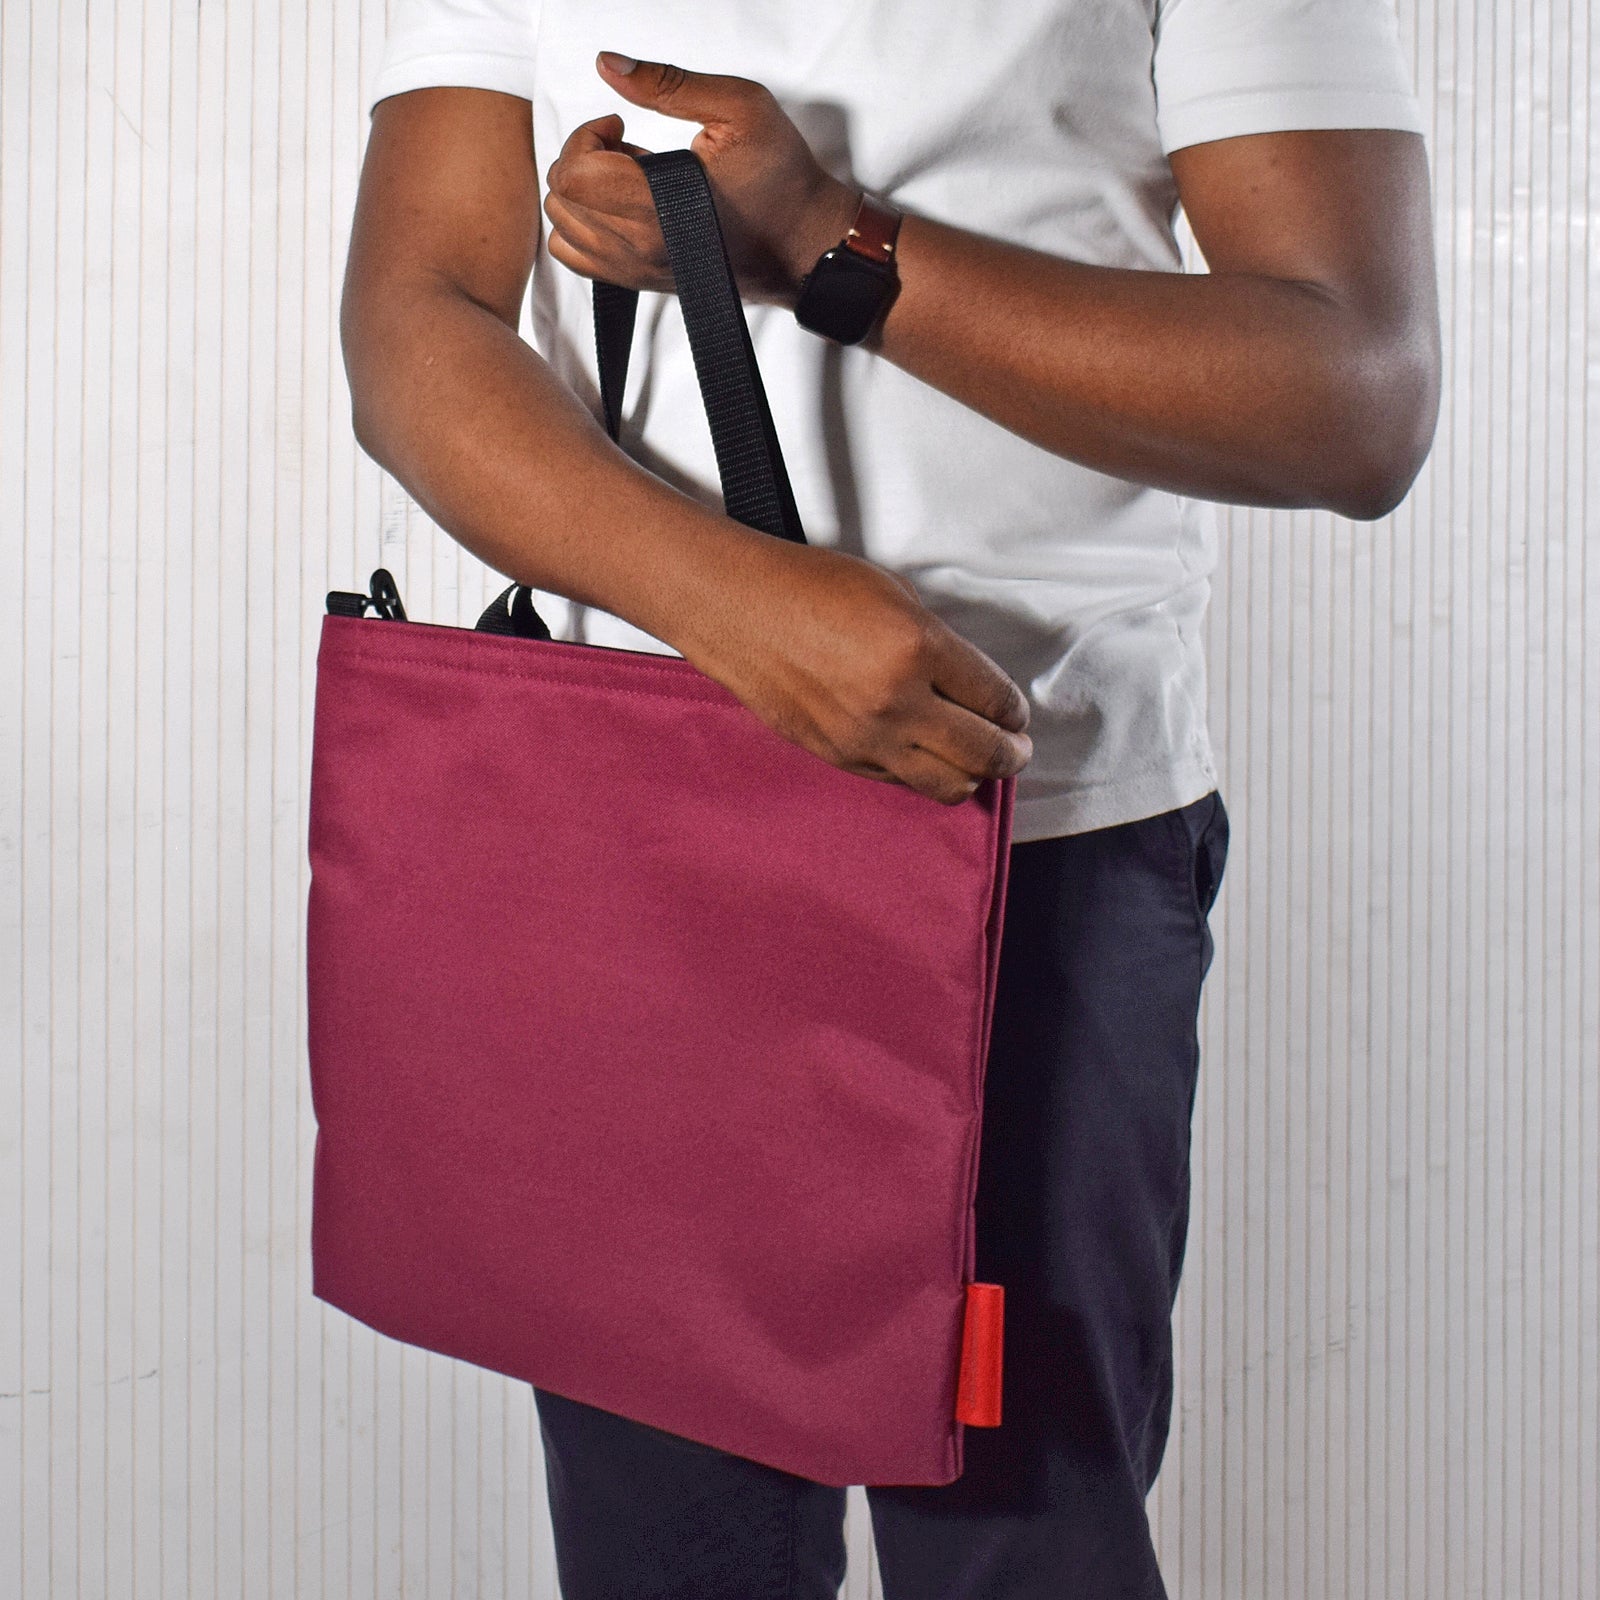 Goodstart Jones plain tote bag in burgundy wine colour 